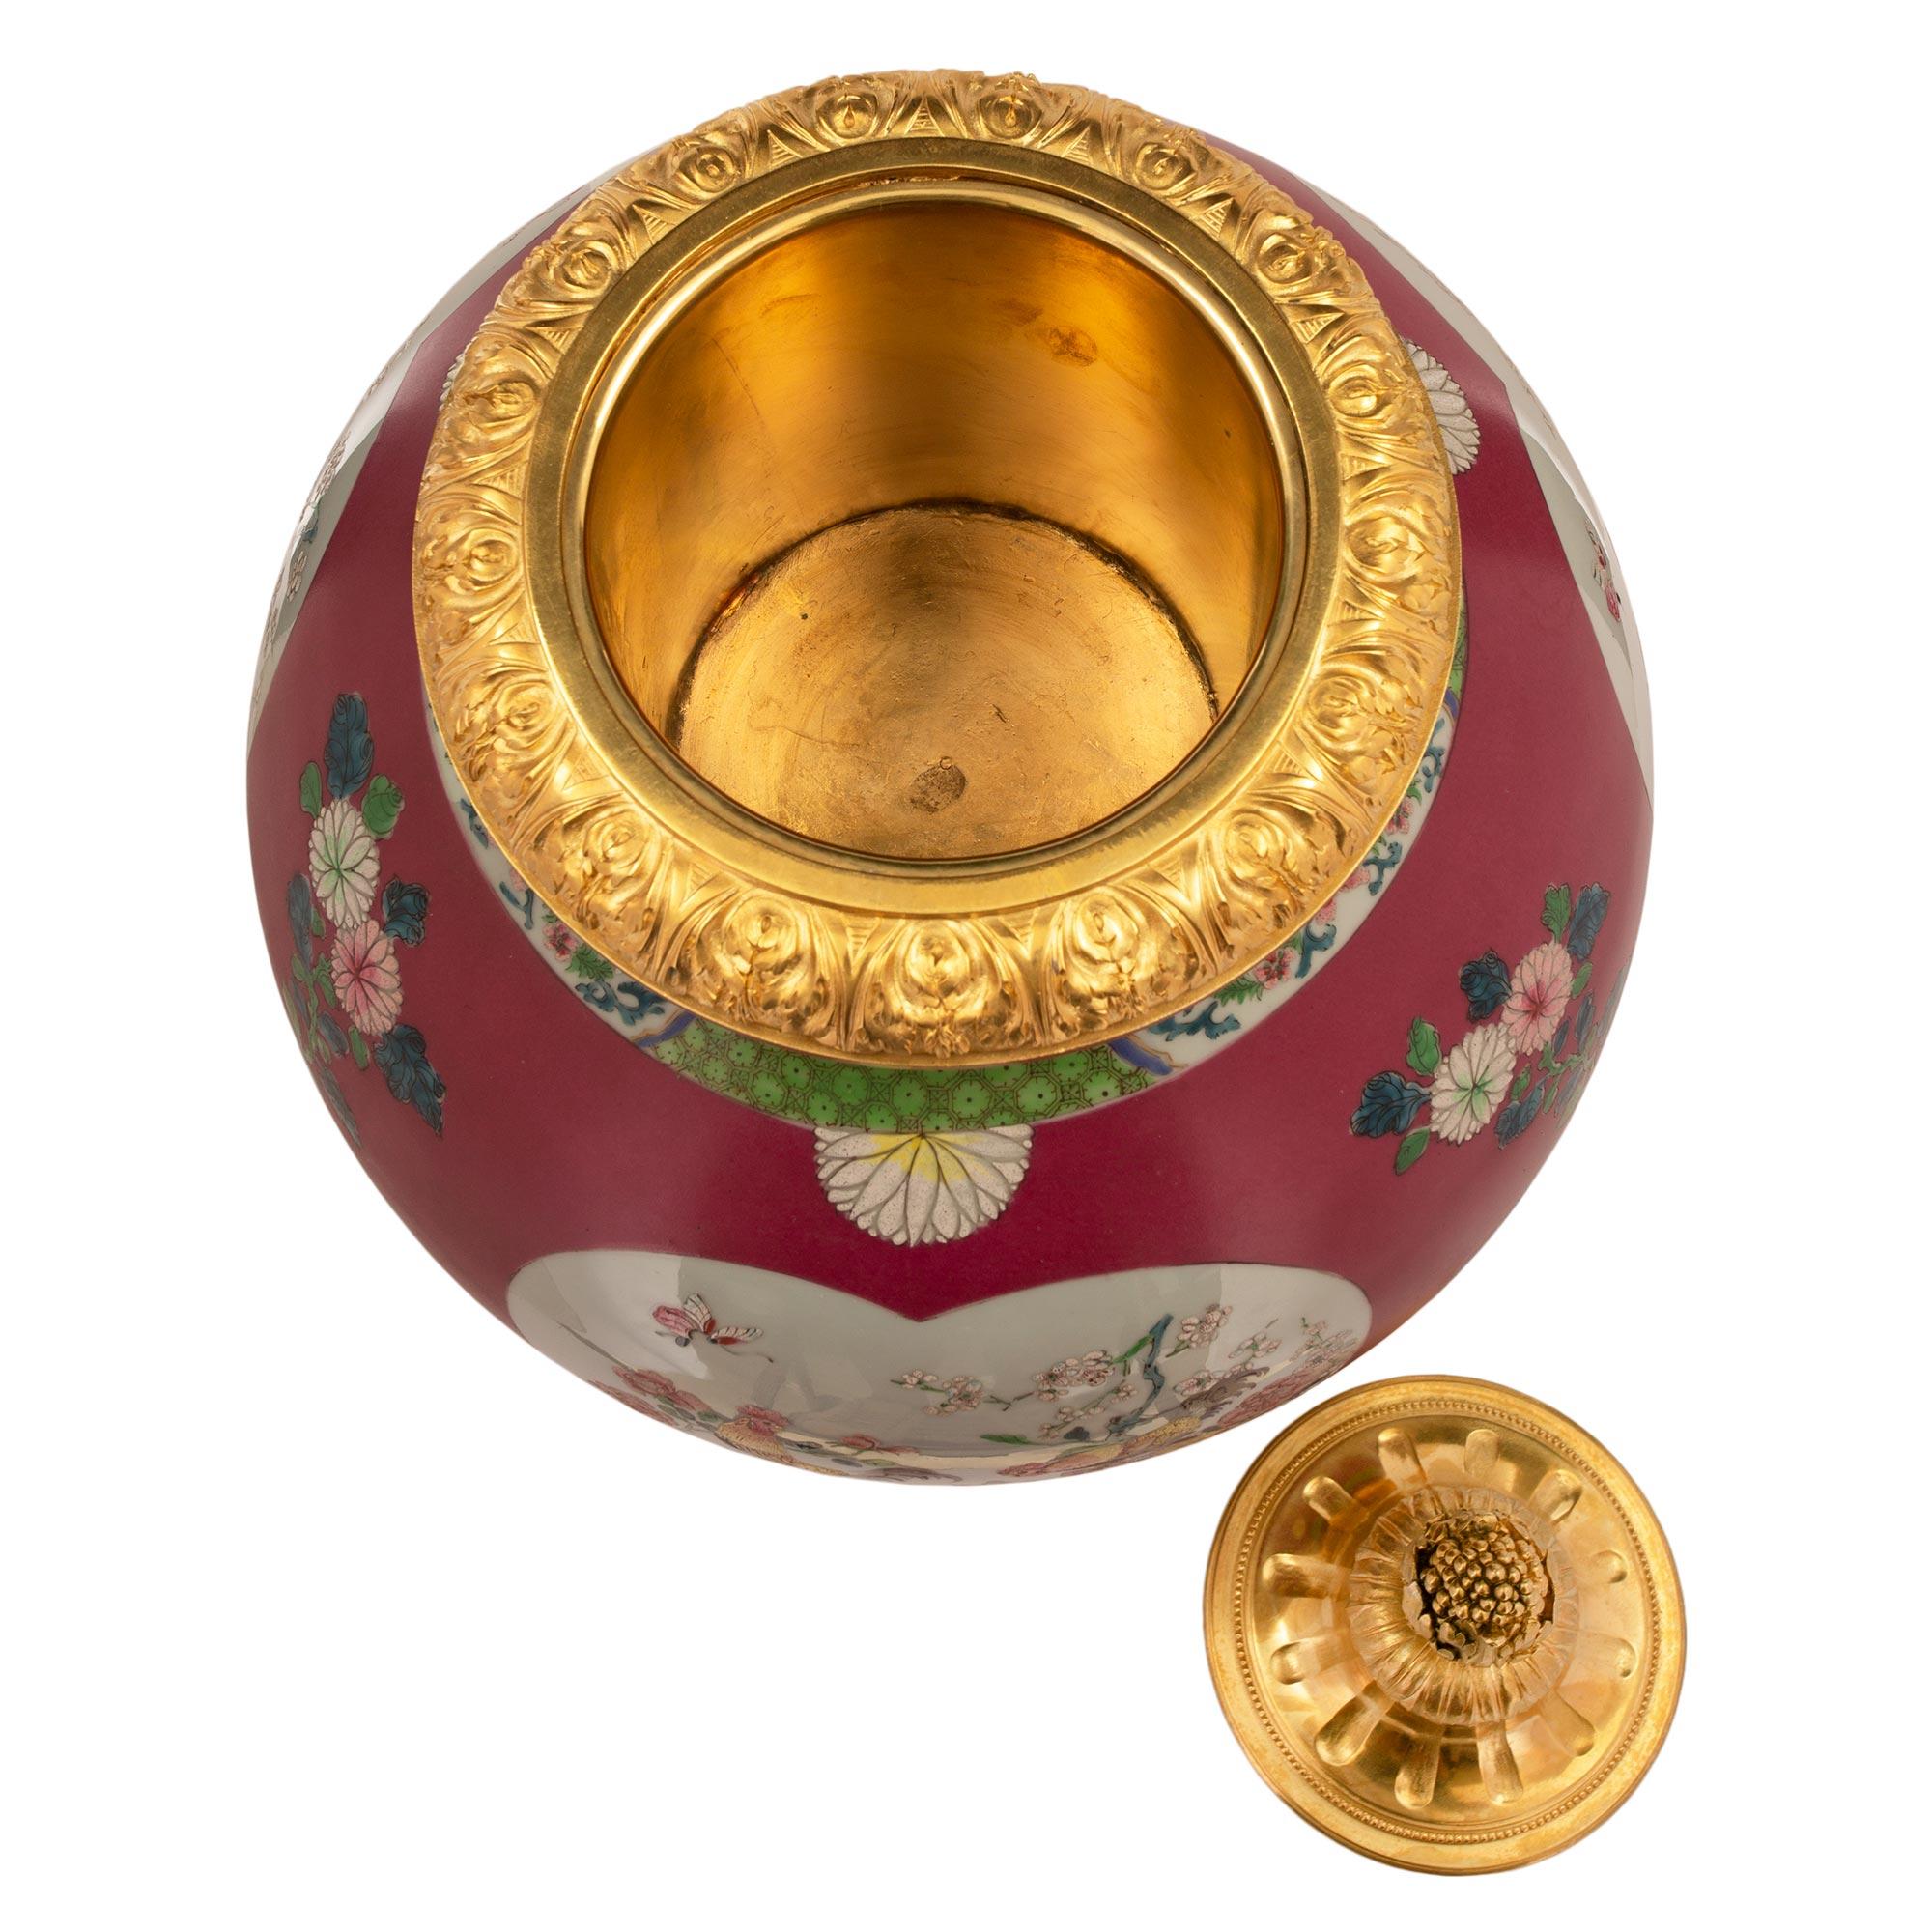 Magnifique urne en porcelaine d'exportation chinoise du 19e siècle avec de remarquables montures en bronze doré de style Louis XVI du 19e siècle. L'urne est surmontée d'une élégante base carrée en bronze doré avec des coins concaves et de fins